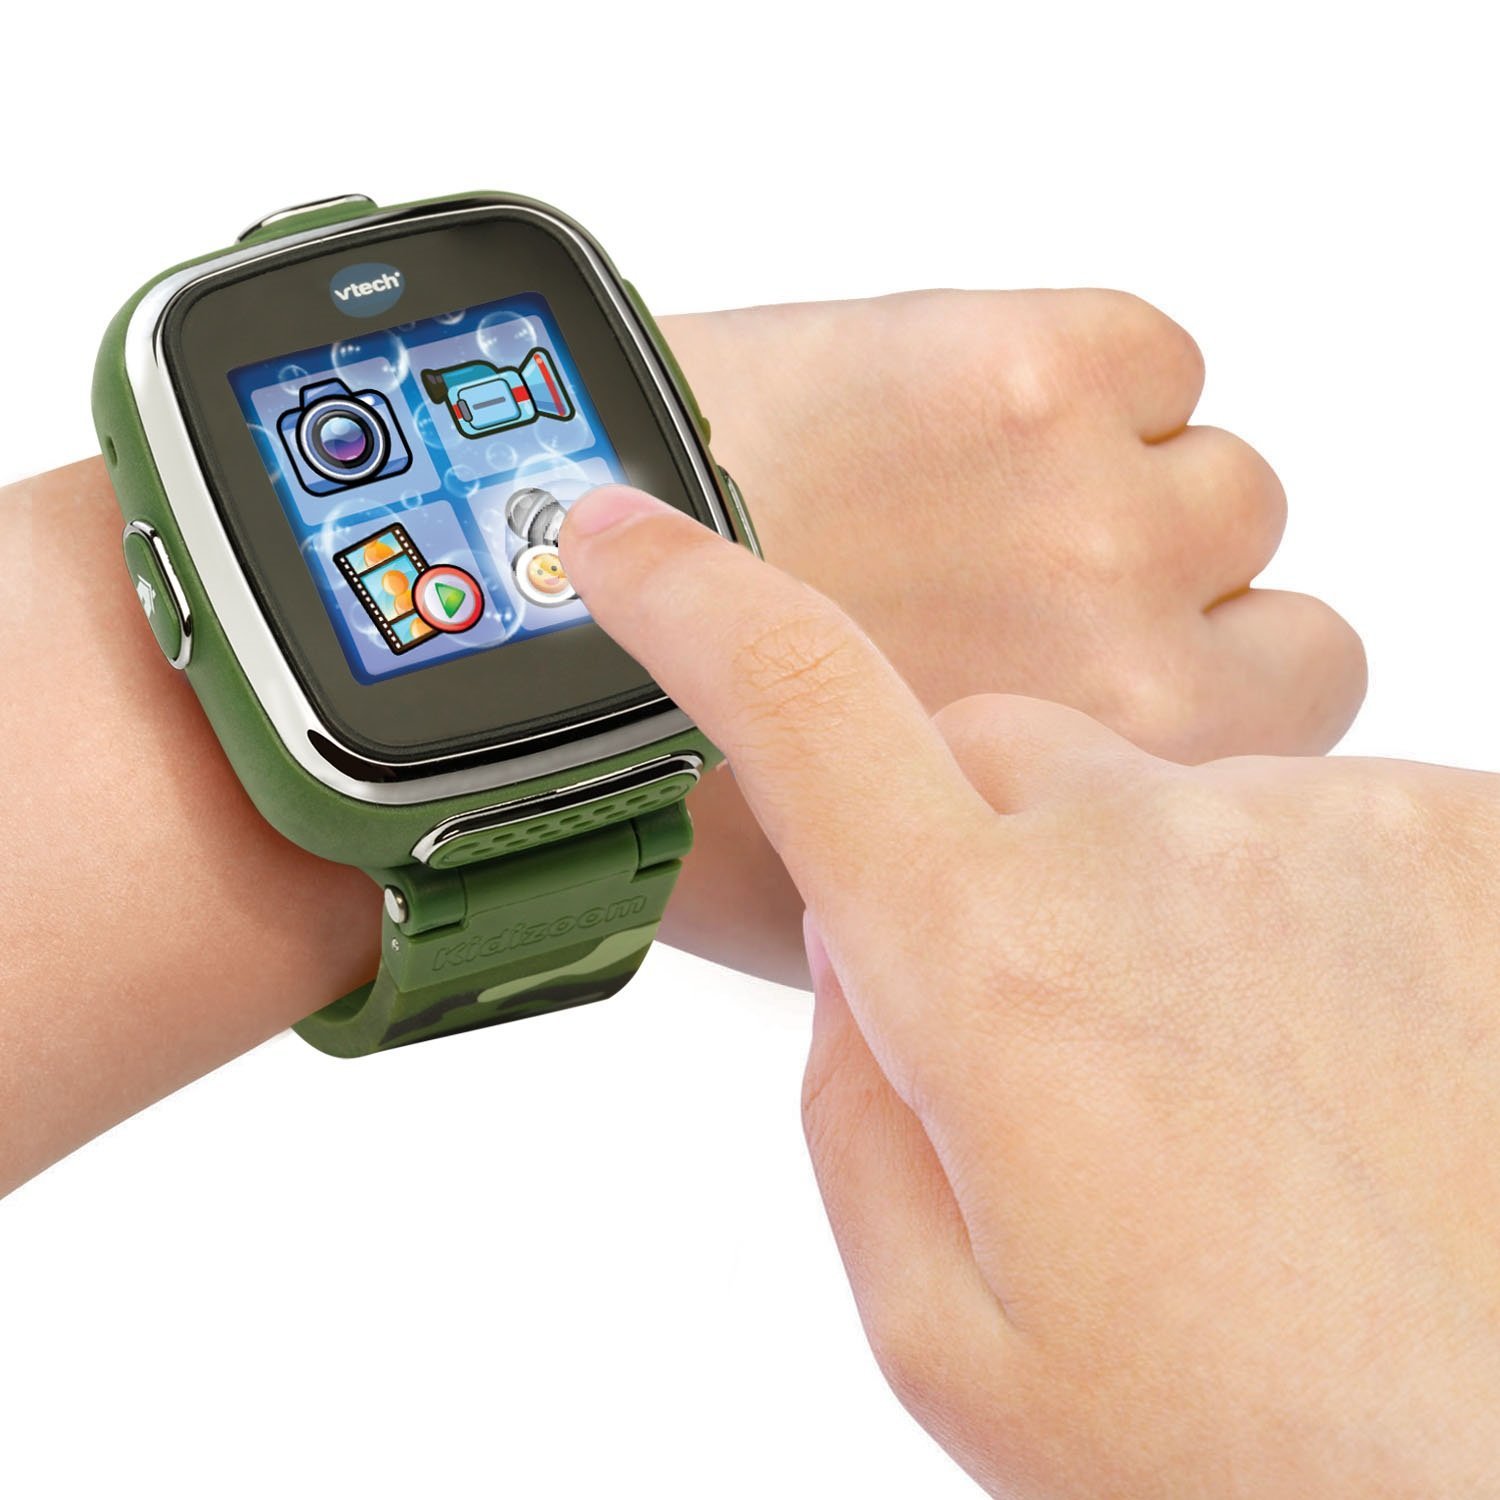 Детские наручные часы Kidizoom SmartWatch DX, цвет – камуфляж  